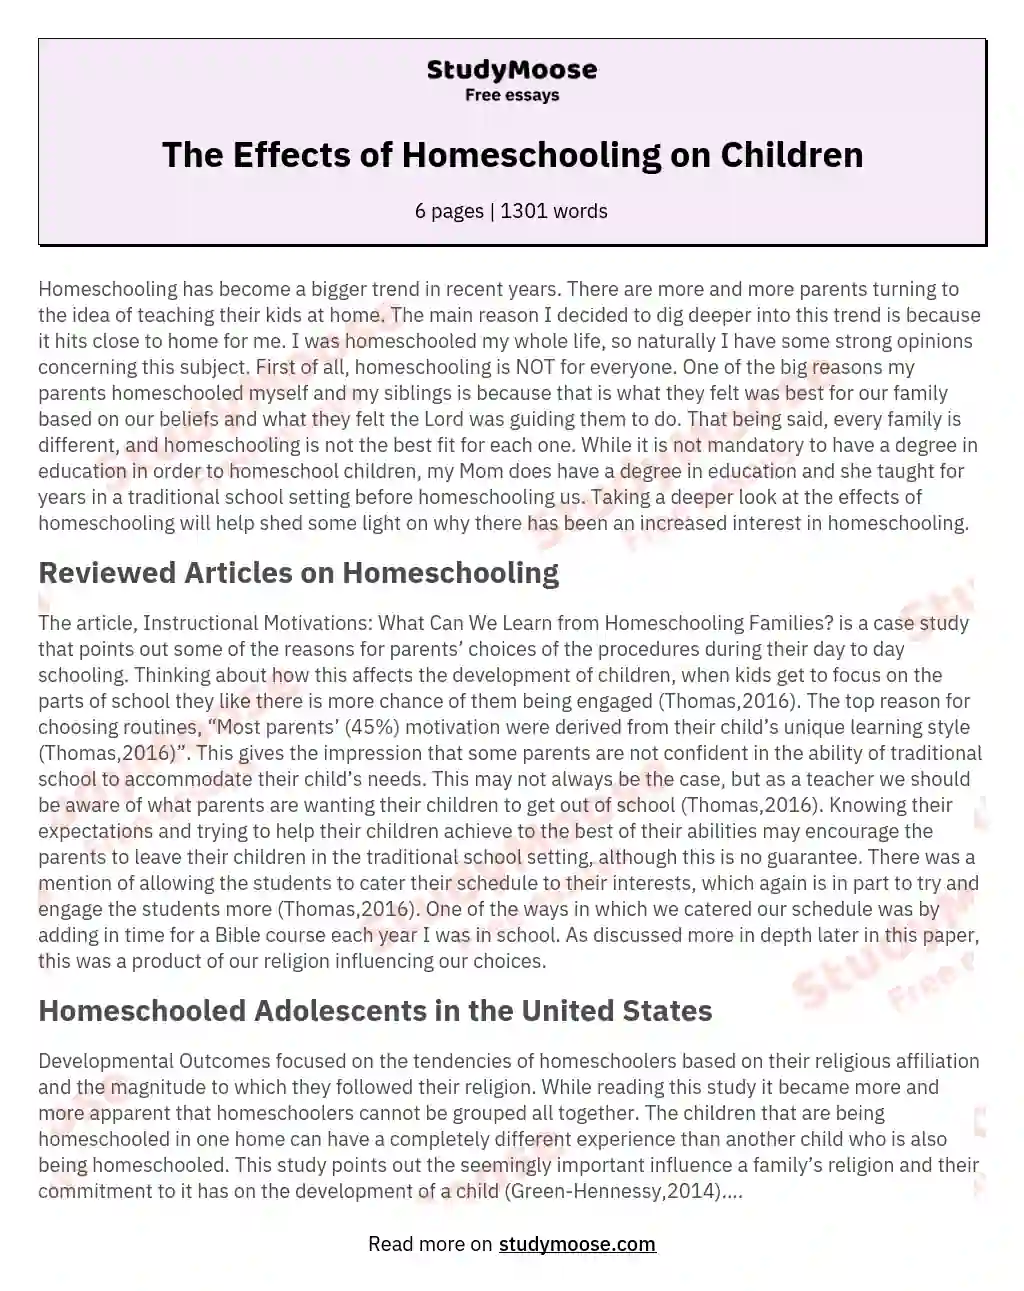 homeschooling opinion essay